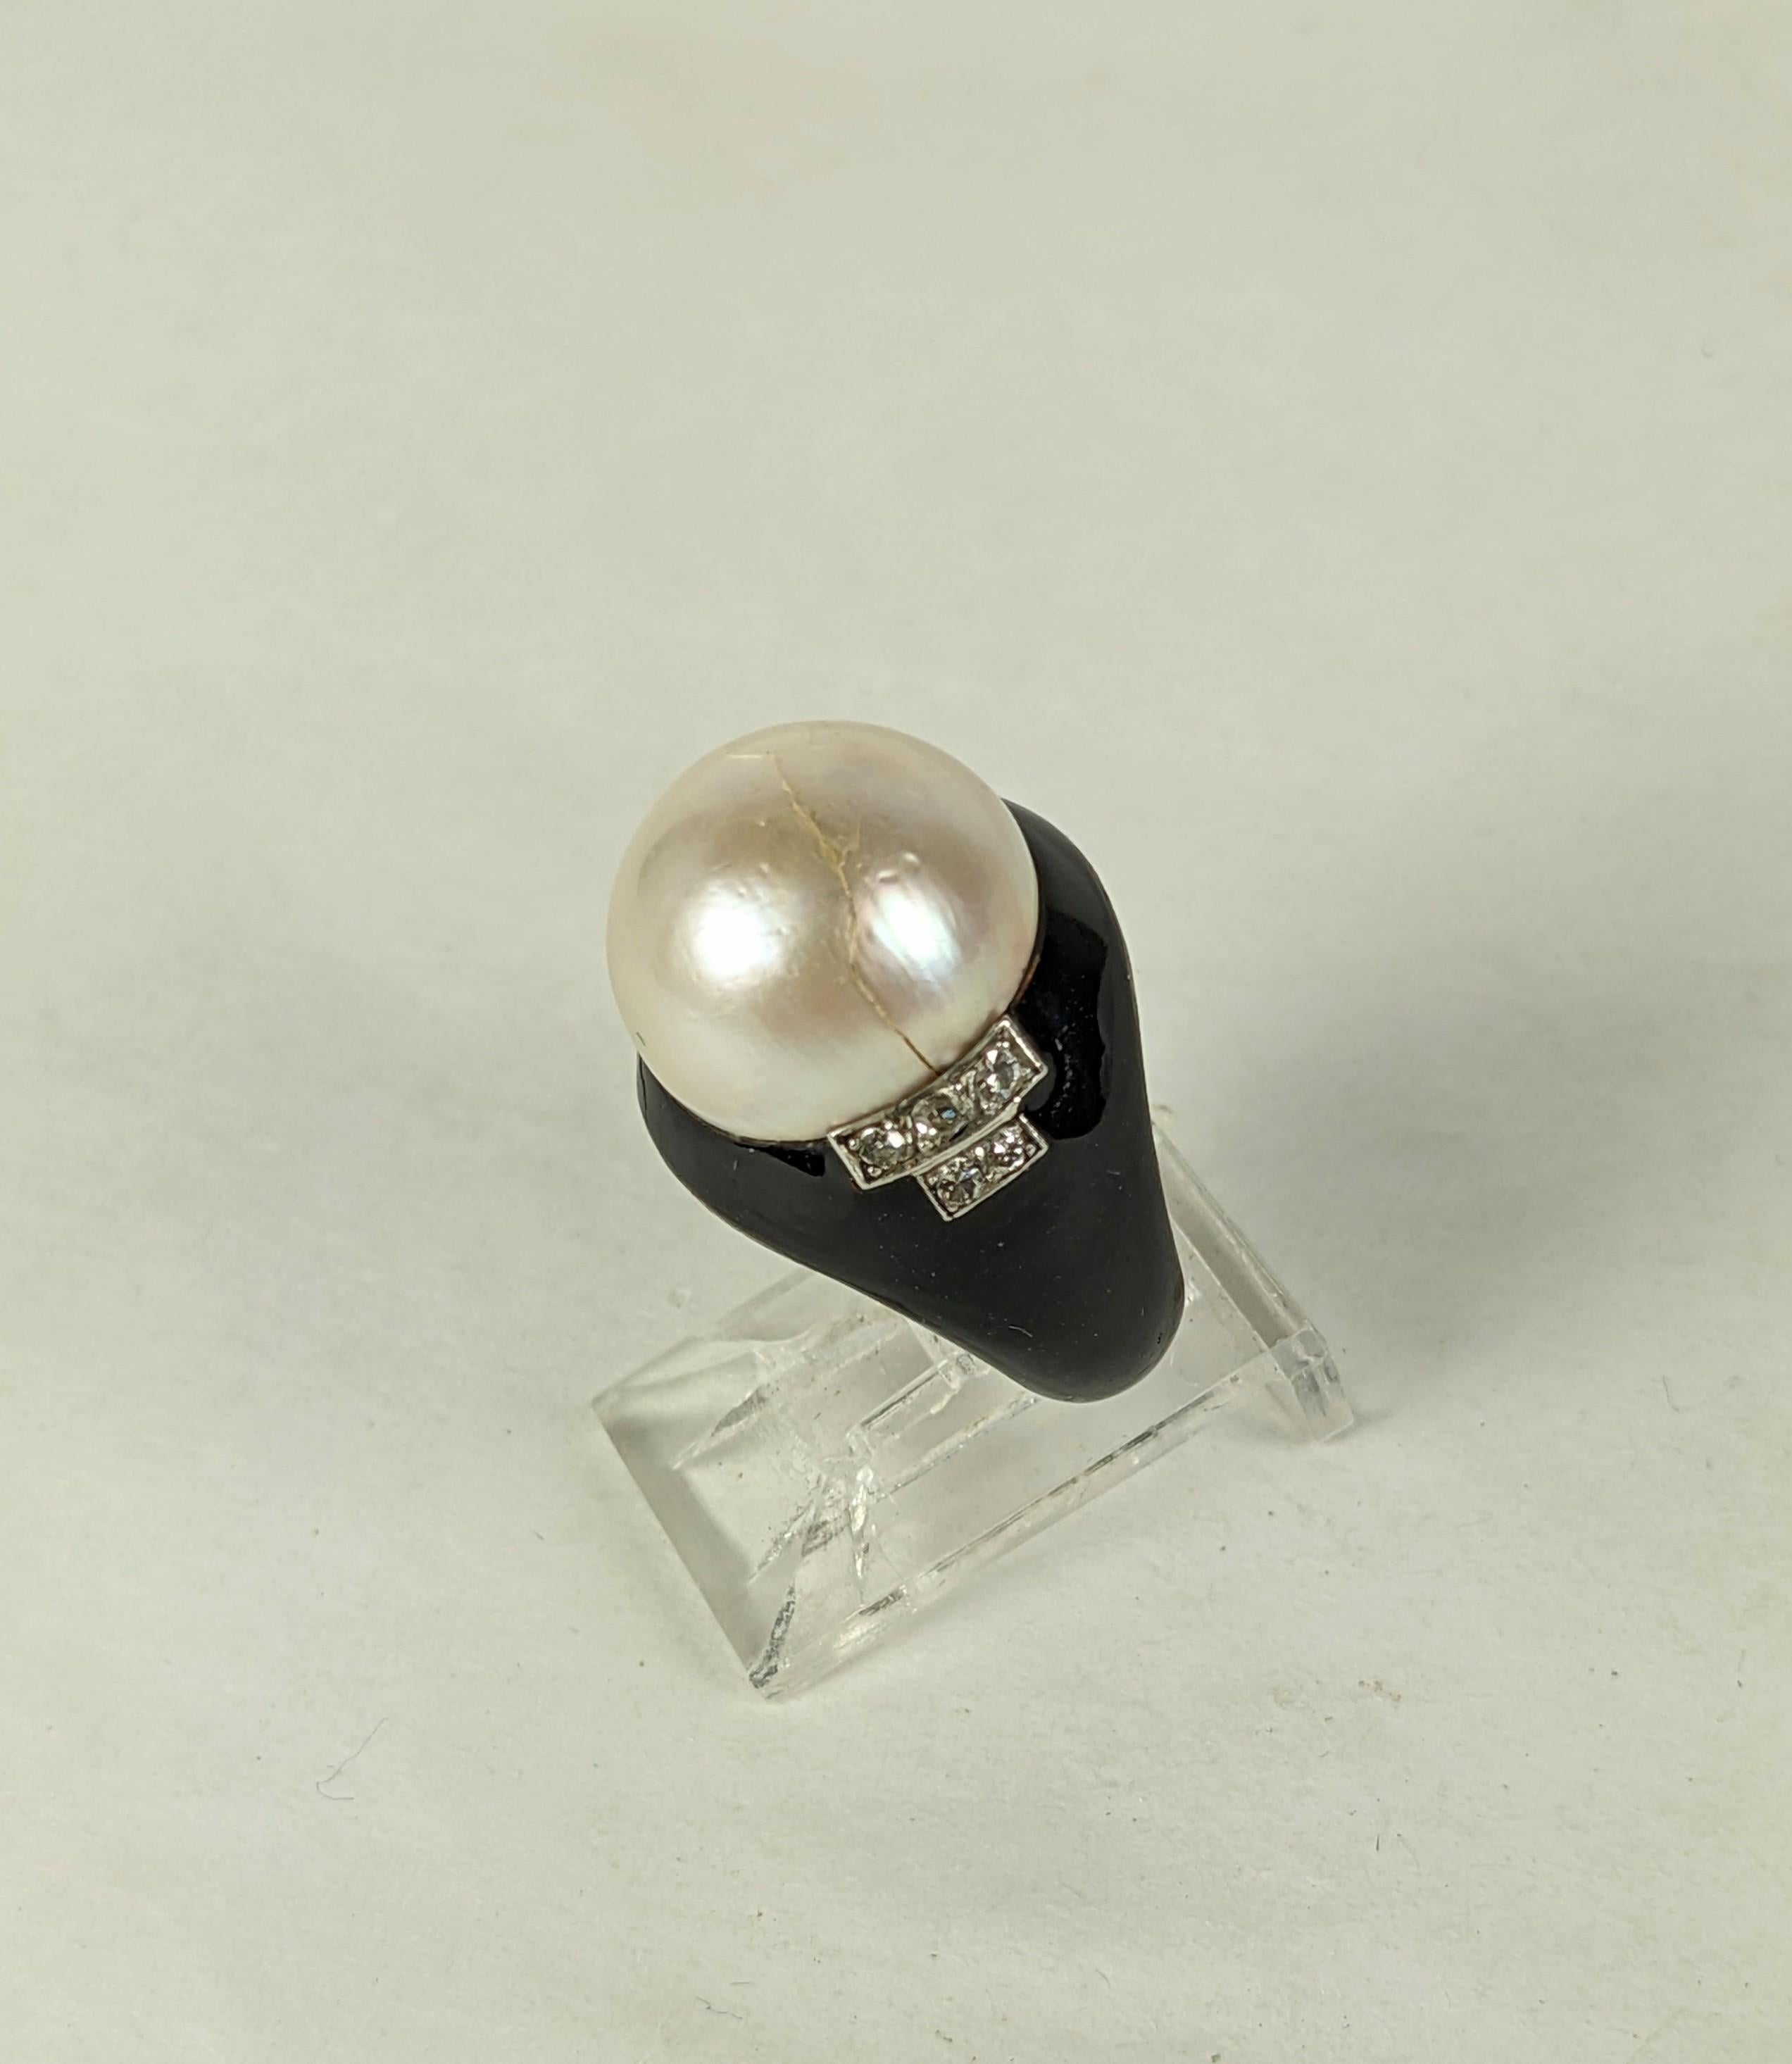 Schöner Art Deco Mabe Perlen-, Emaille- und Diamantring, zugeschrieben Rene Boivin aus den 1920er Jahren. In Silber gefasst, mit einer großen gewölbten Mabe-Perle und einem abgestuften Design aus Diamanten, das auf einem Sockel aus schwarzer Emaille